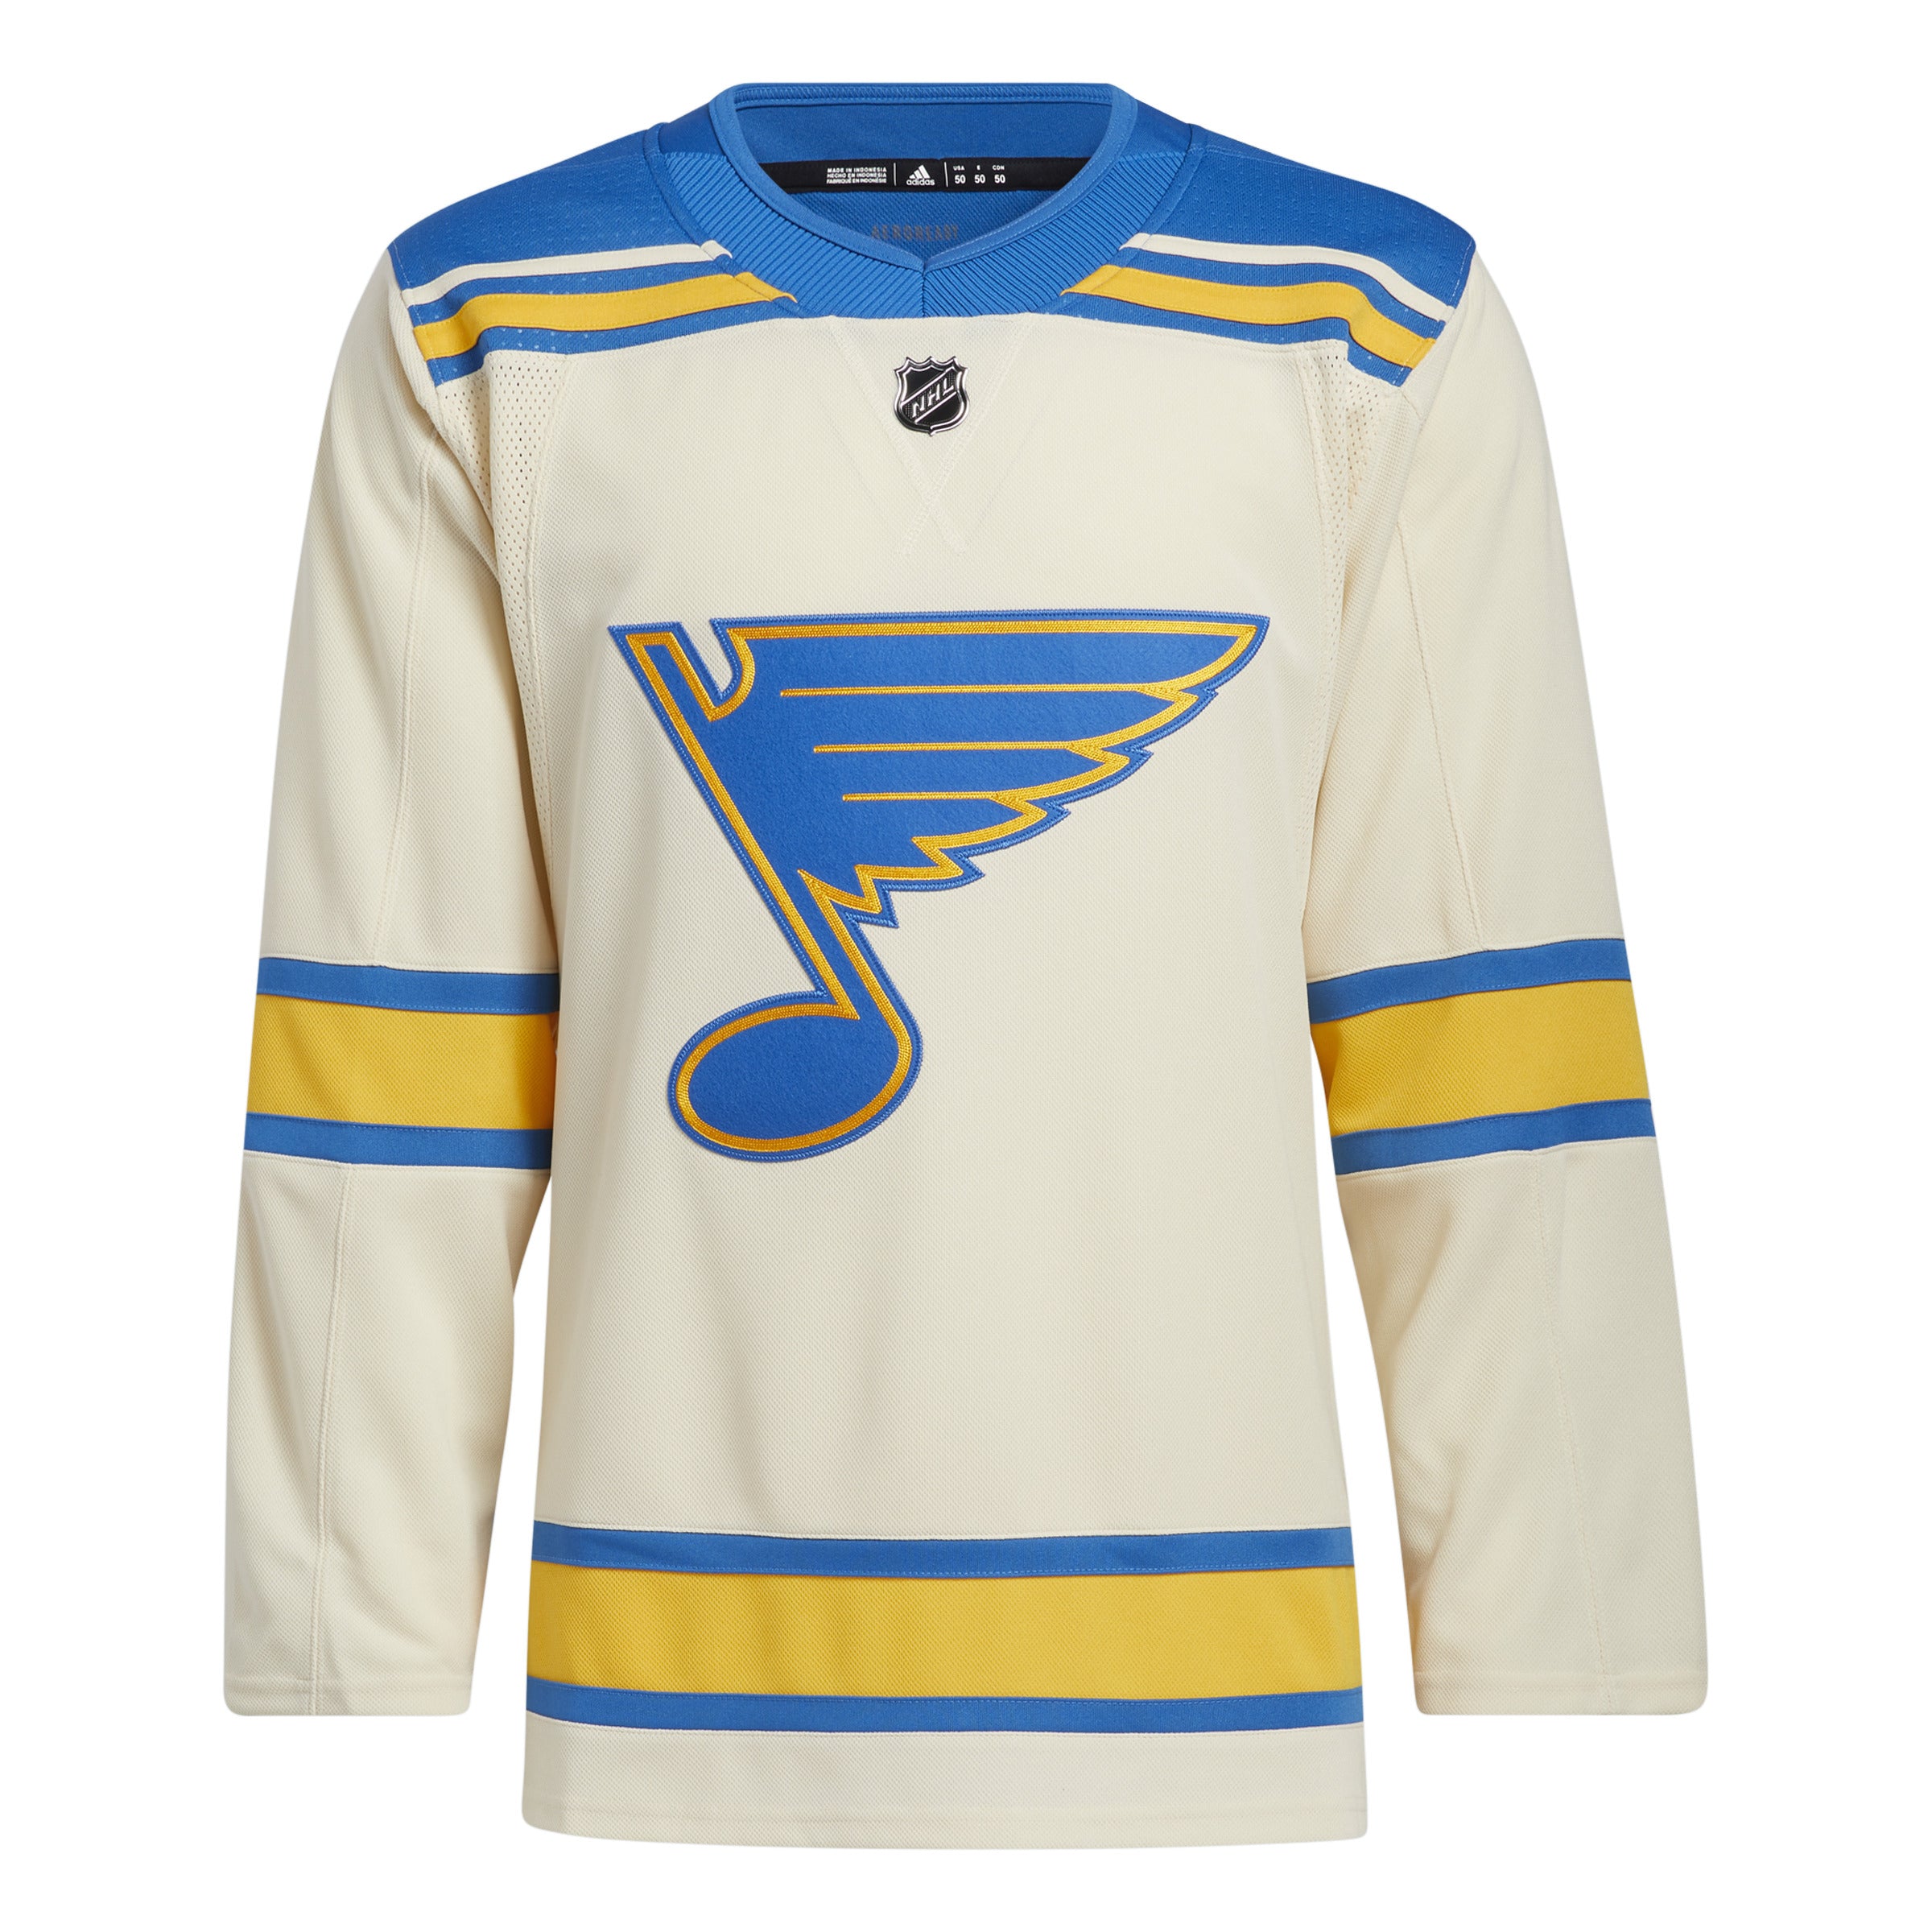 St. Louis Blues NHL Adidas Men's Royal Blue Team Classics Vintage Authentic Jersey L(52)